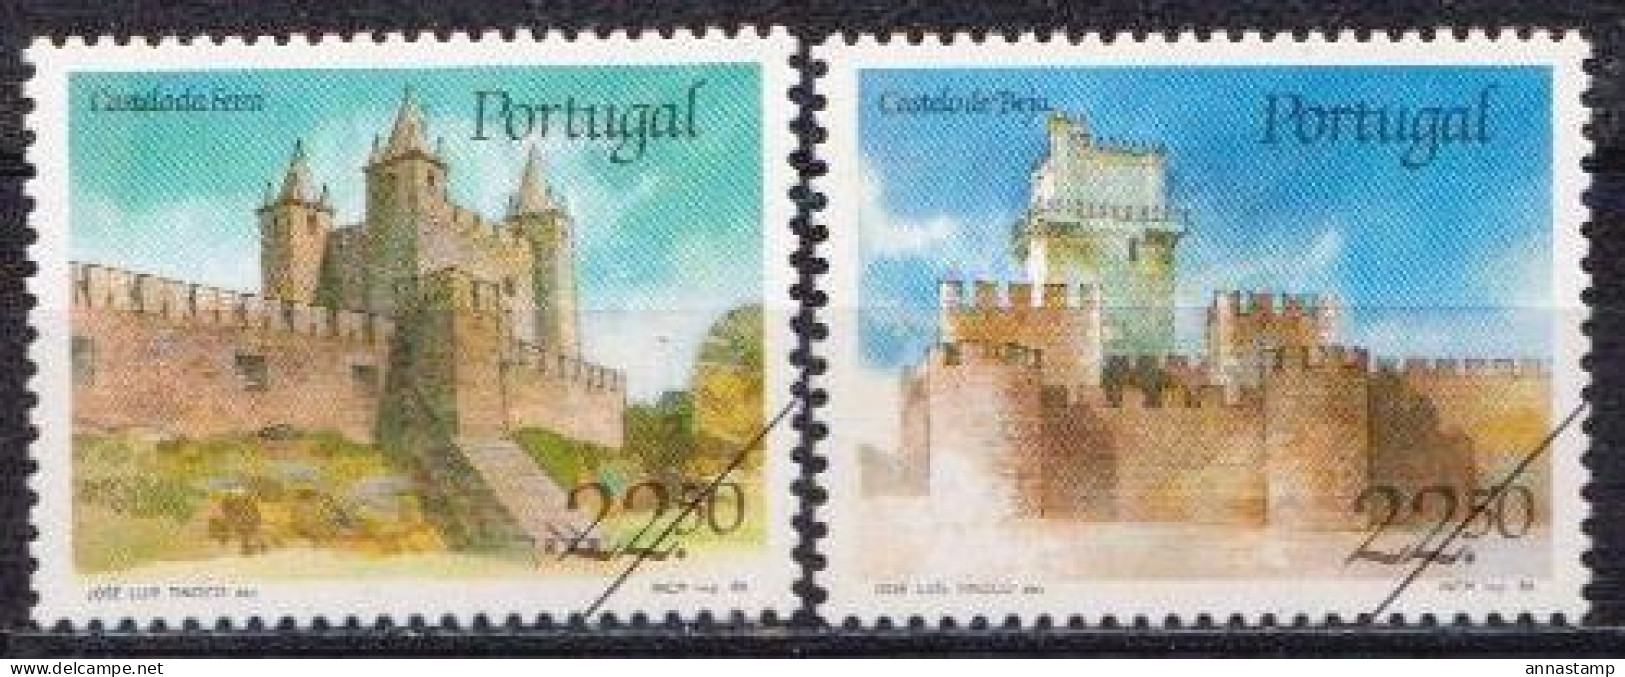 Portugal MNH Stamps, SPECIMEN - Castles